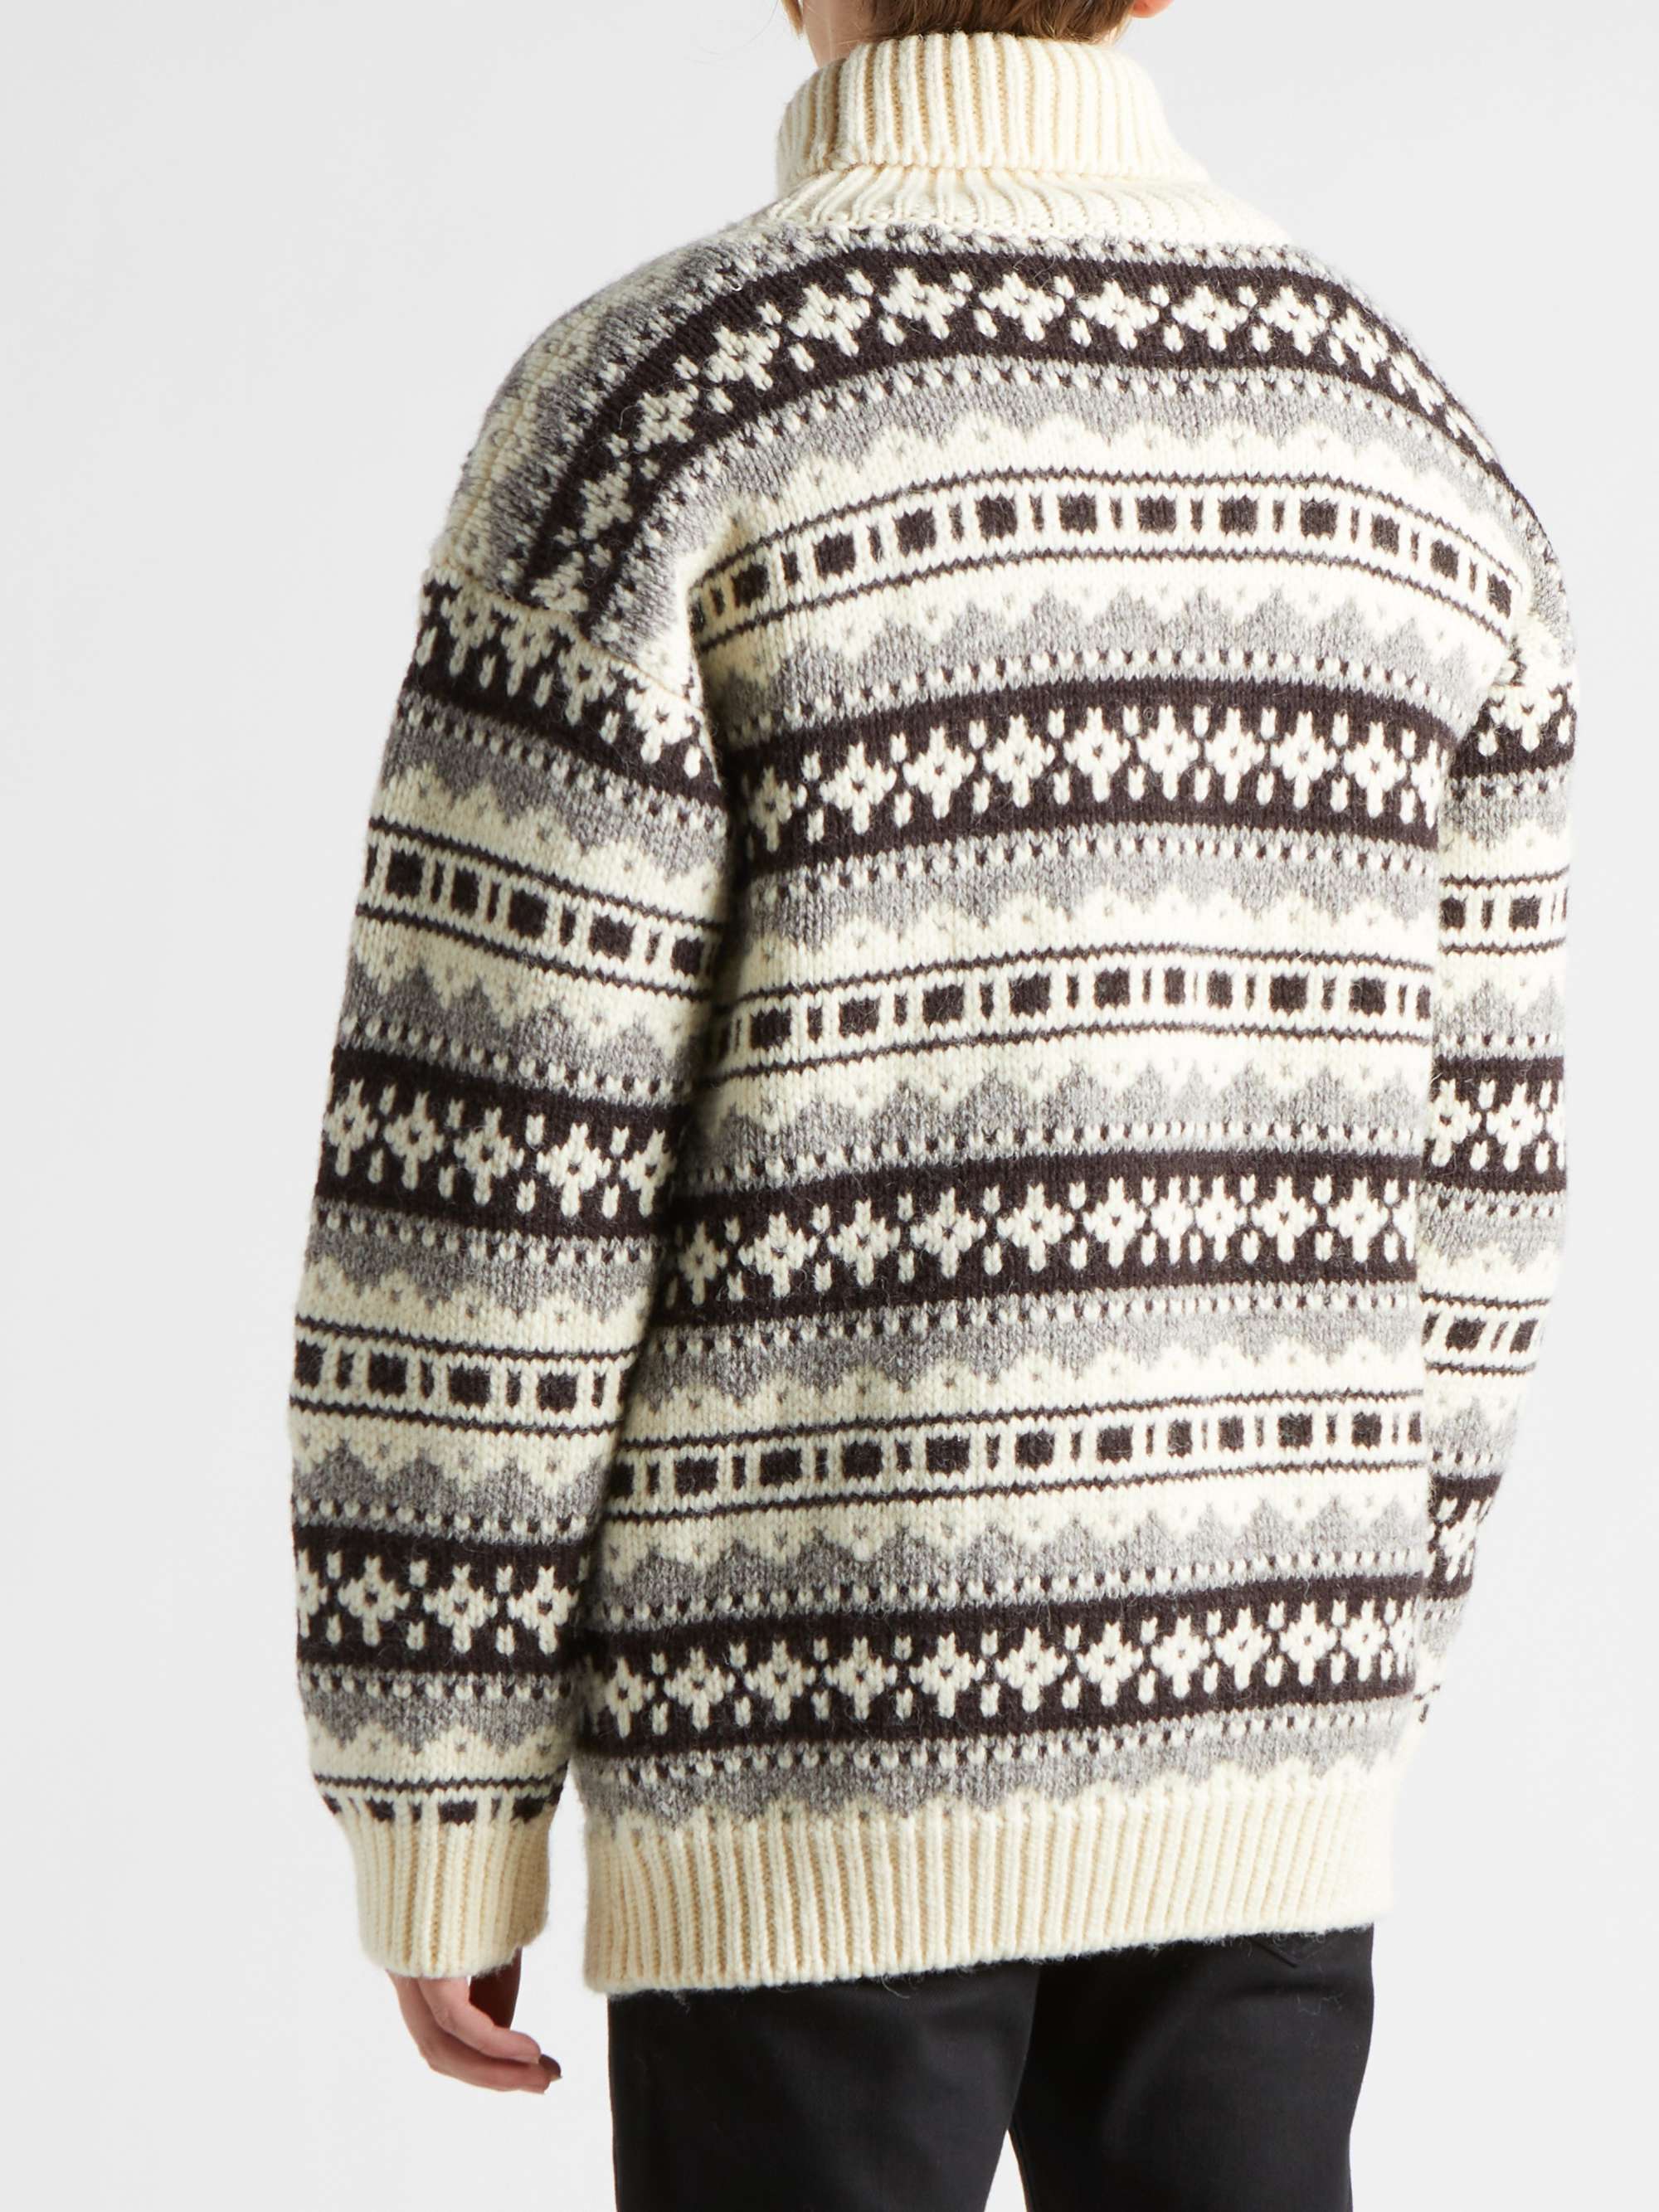 CELINE HOMME Oversized Fair Isle Shetland Wool Rollneck Sweater